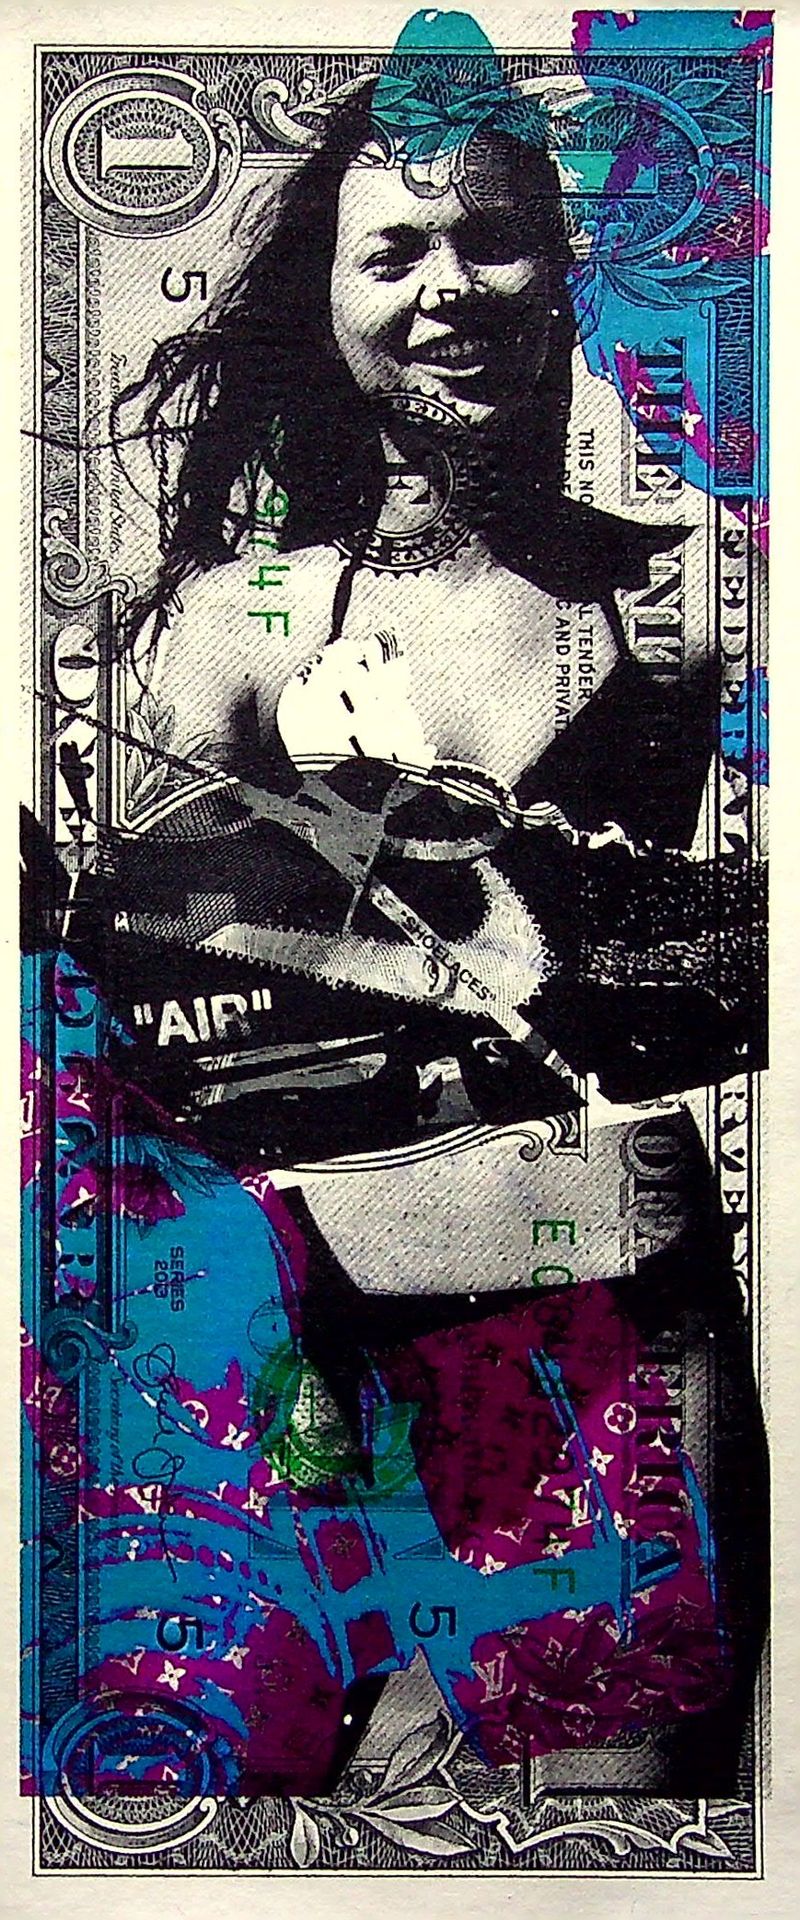 Death NYC Morte NYC

Vapormax OFF WHITE con Kate Moss, 2020

Serigrafia original&hellip;